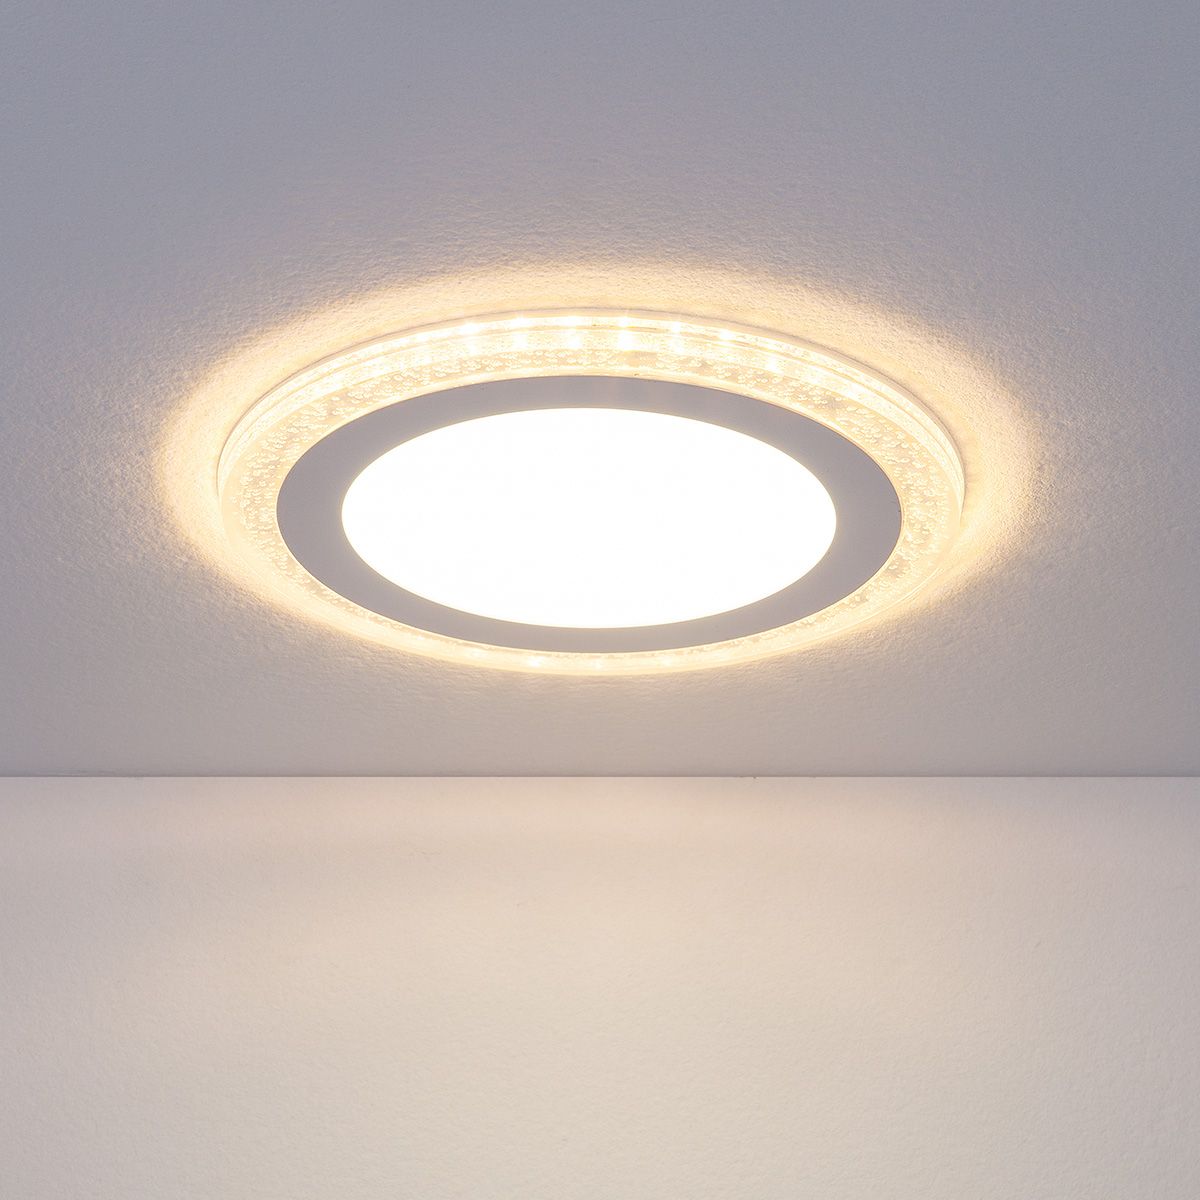 Встраиваемый потолочный светодиодный светильник DLR024 18W 4200K. Фото 1